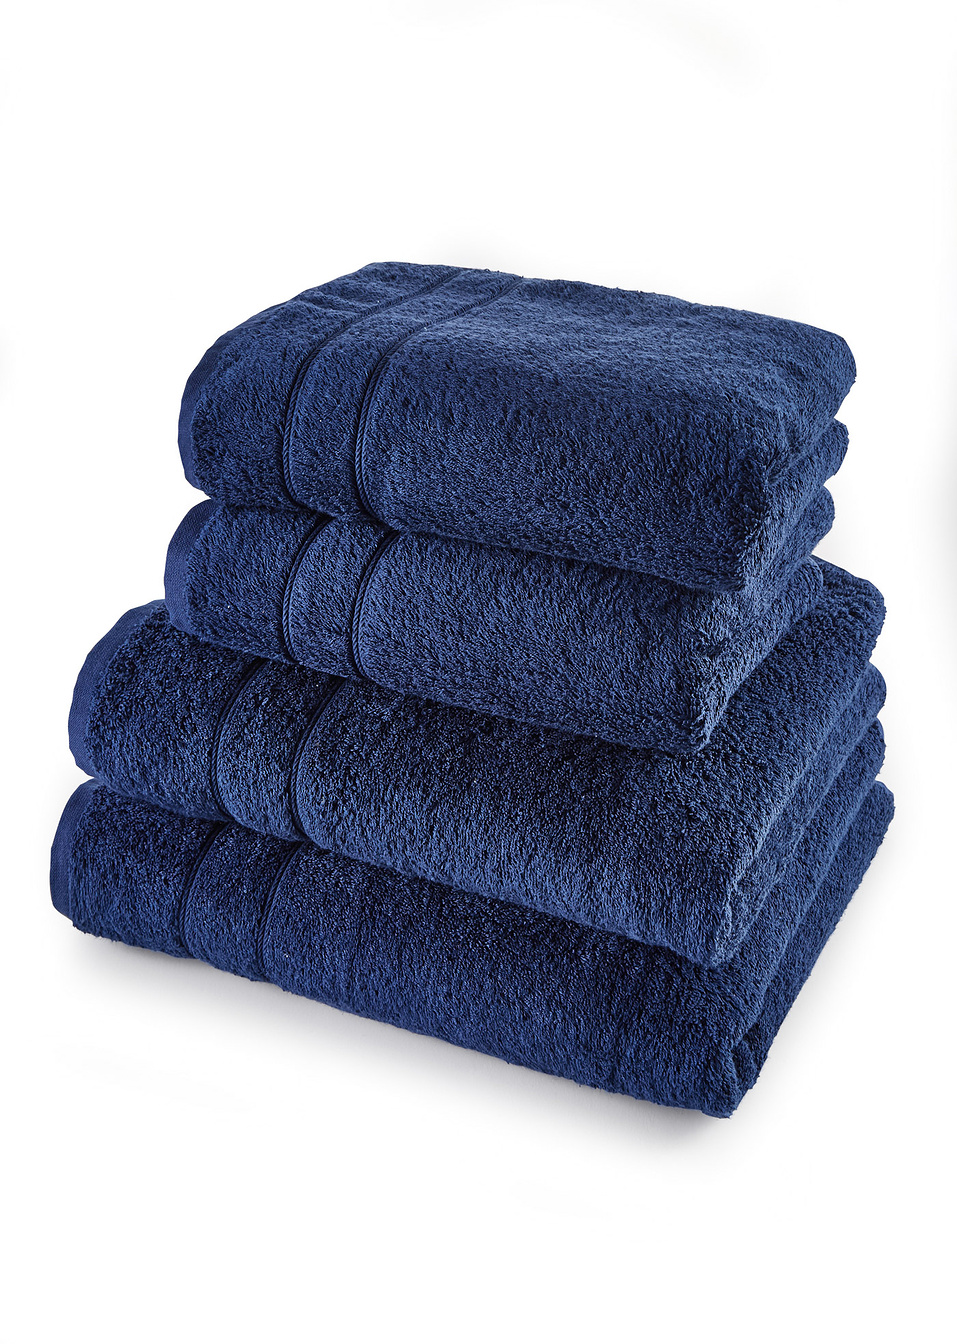 Μαλακές πετσέτες (σετ 4 τεμ.)-bpc living